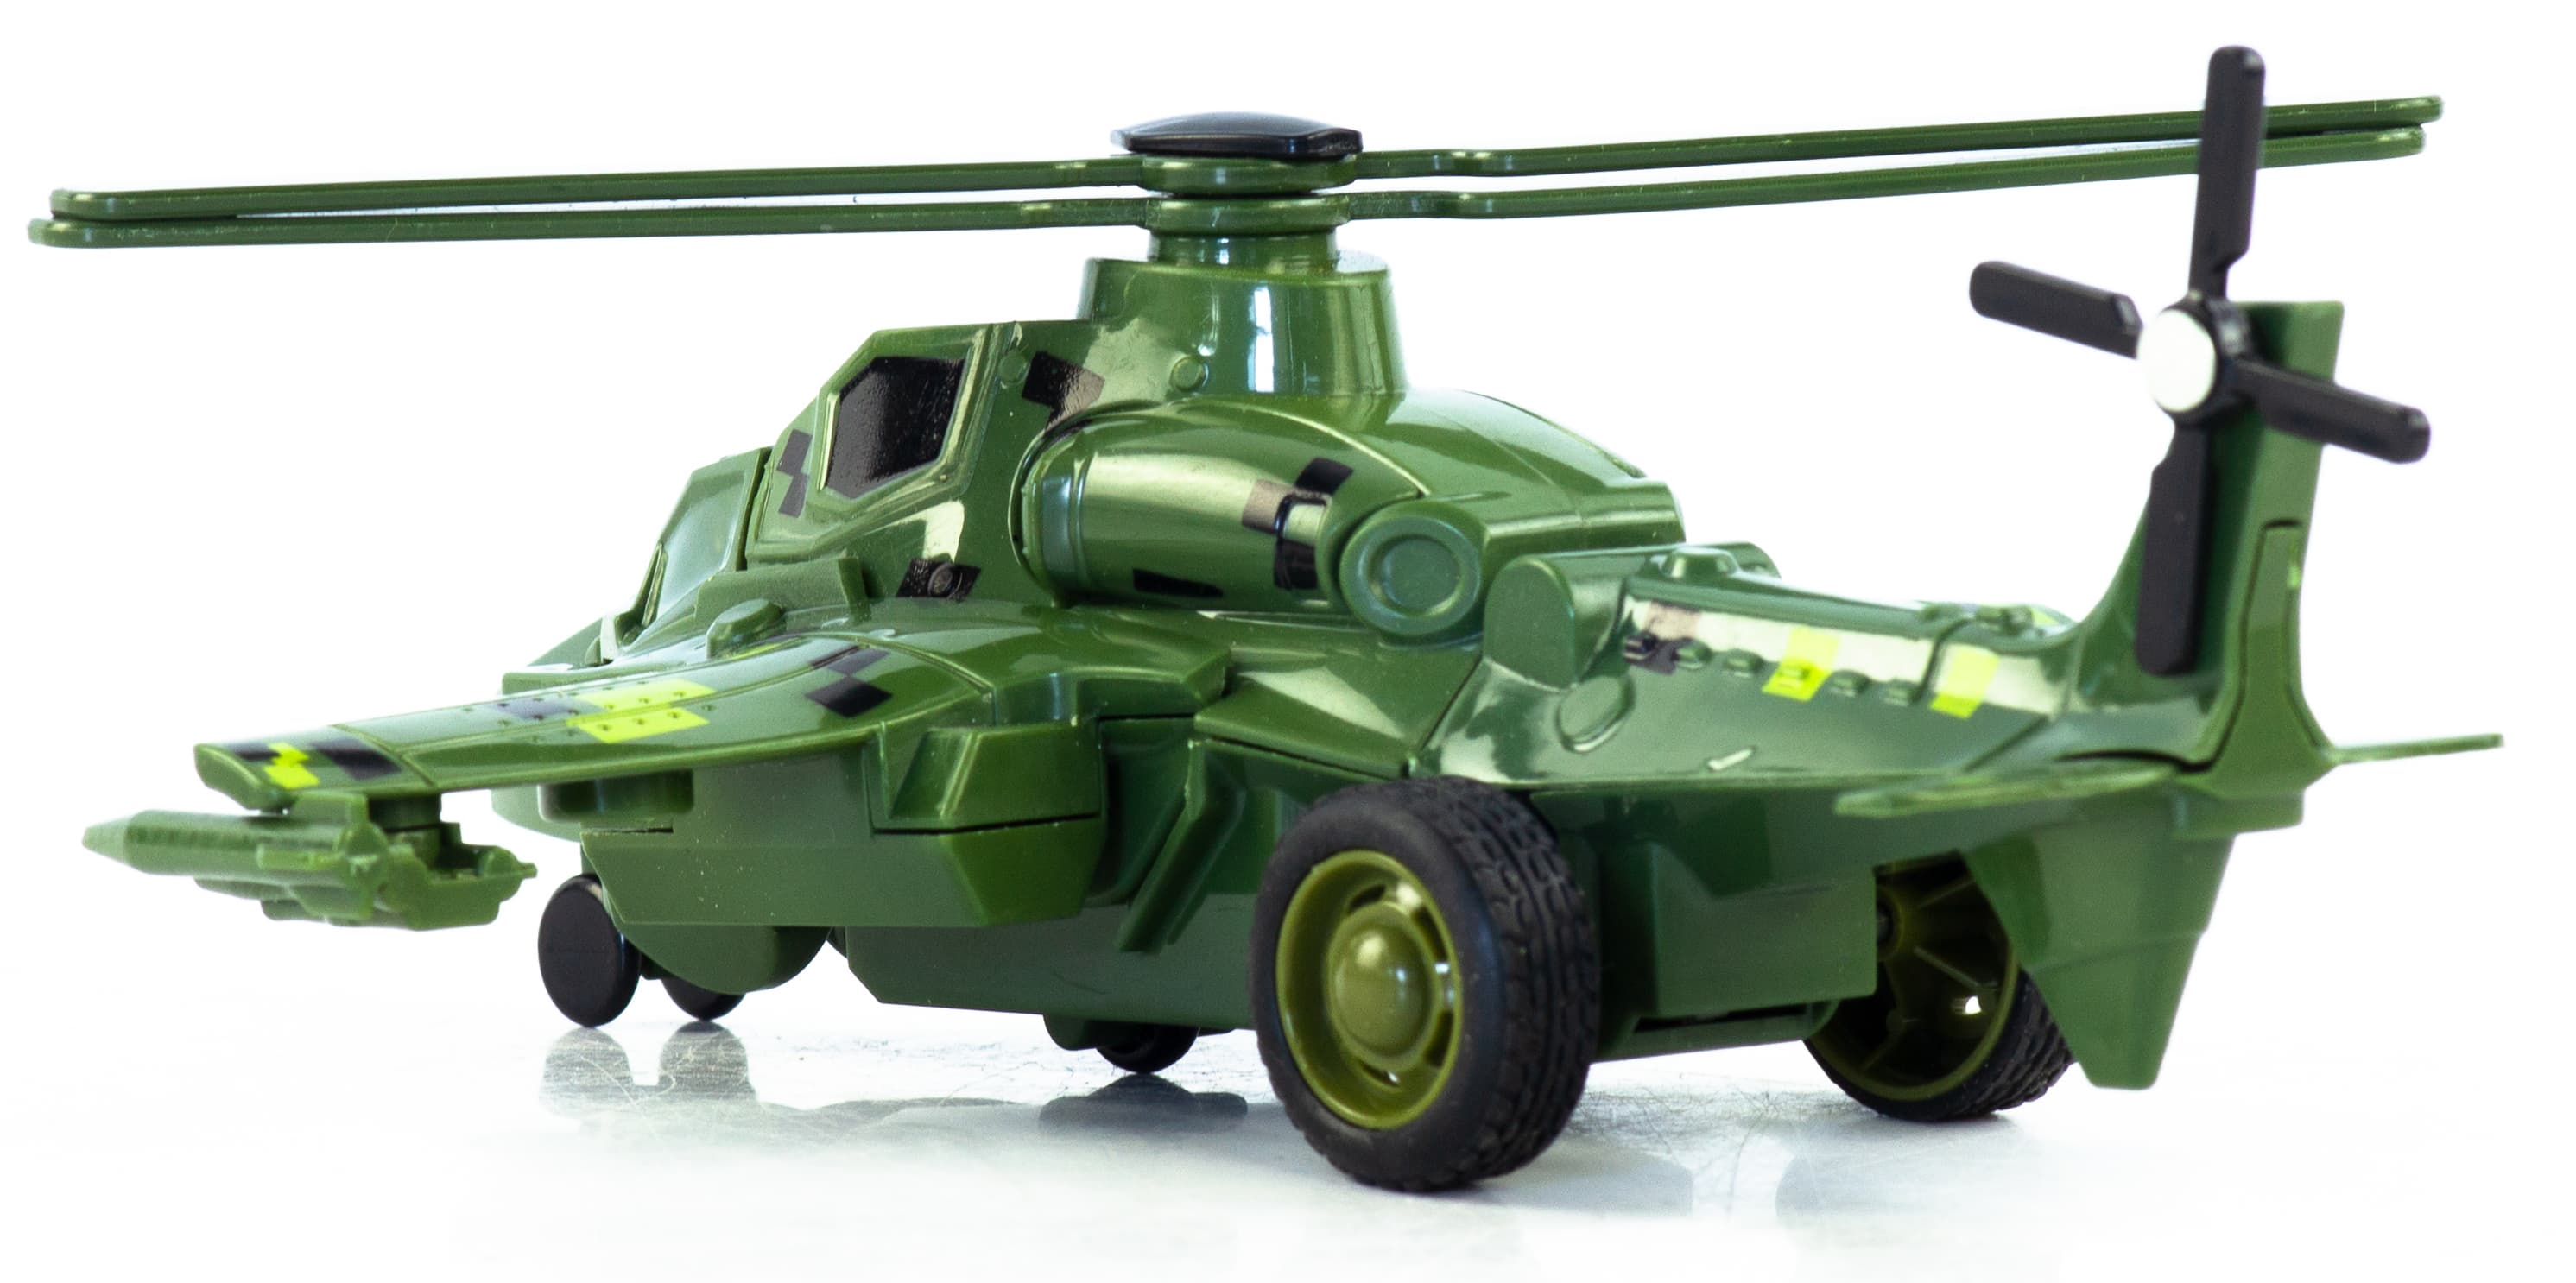 Игровой набор «Т‎рансформер-вертолет» 18 см, CY803 / Микс